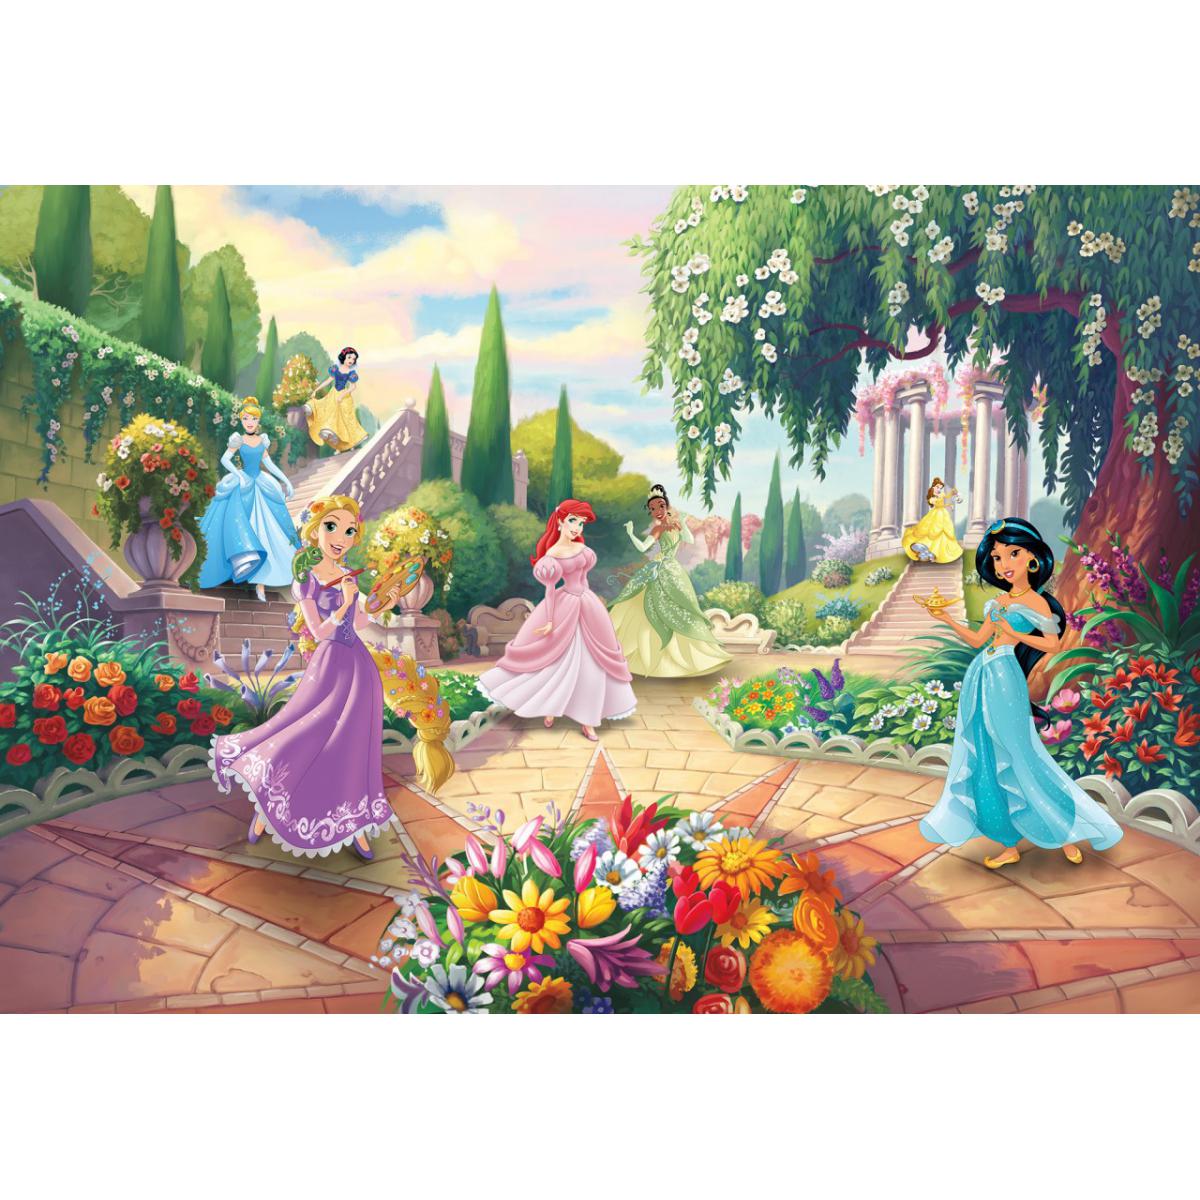 Komar - Papier Peint Photo Les Princesses Disney au parc 368cm x 254cm - Papier peint